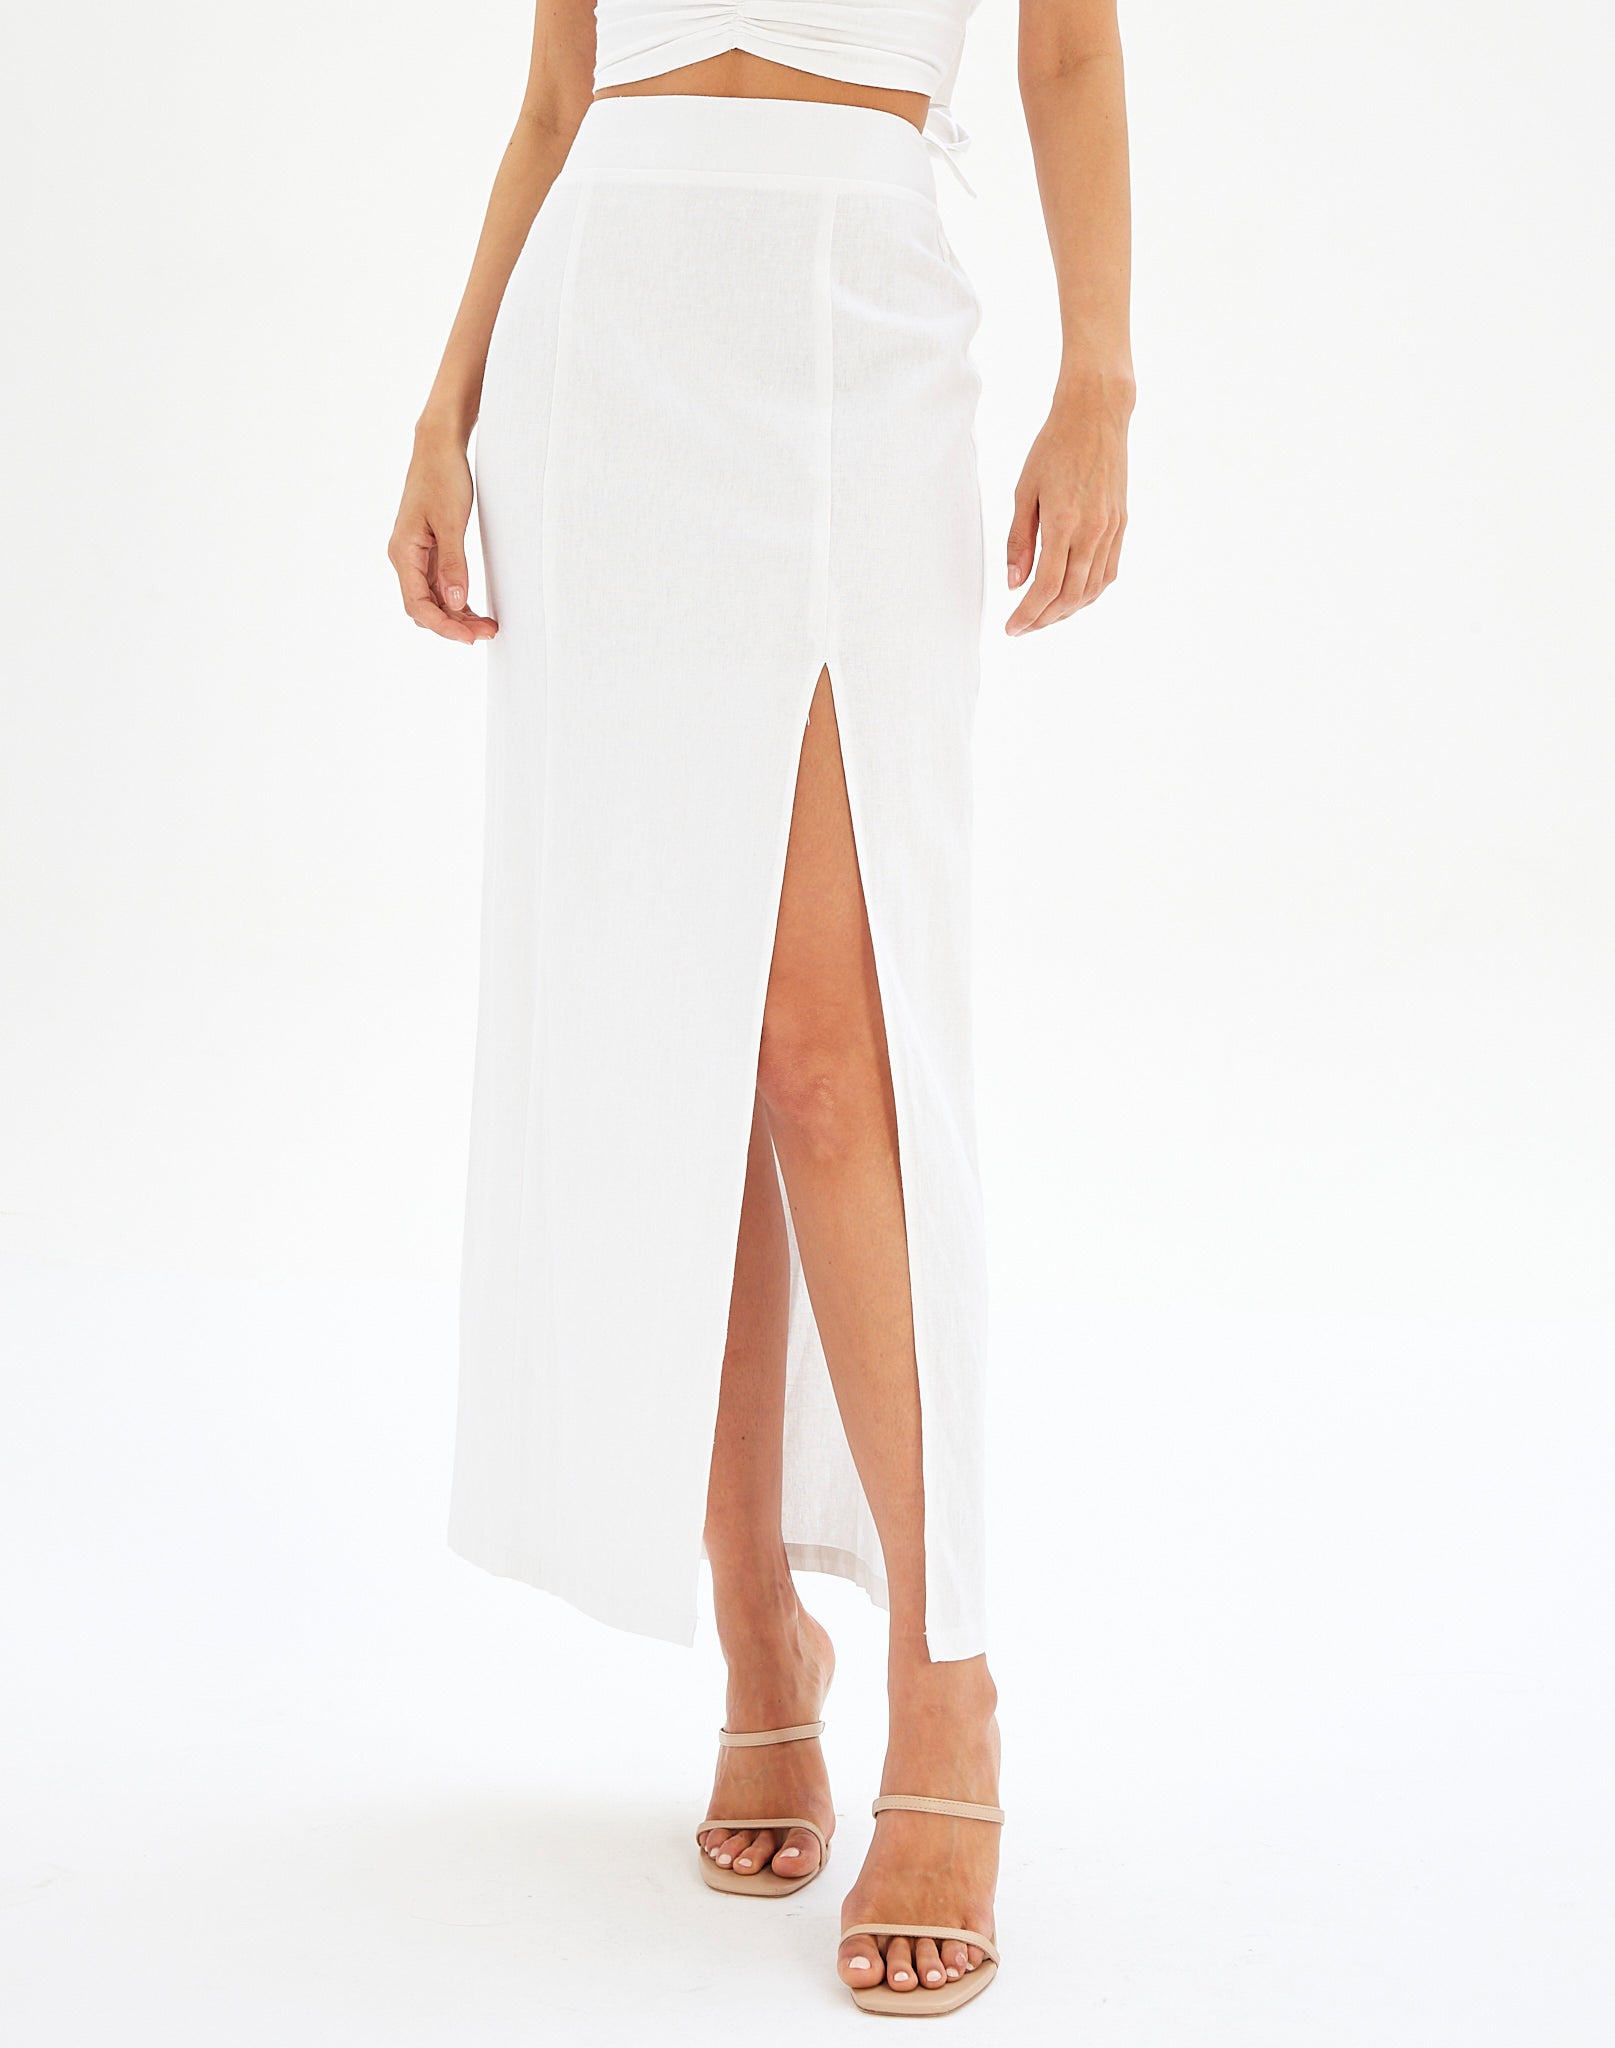 White Linen Skirt Glassons | vlr.eng.br